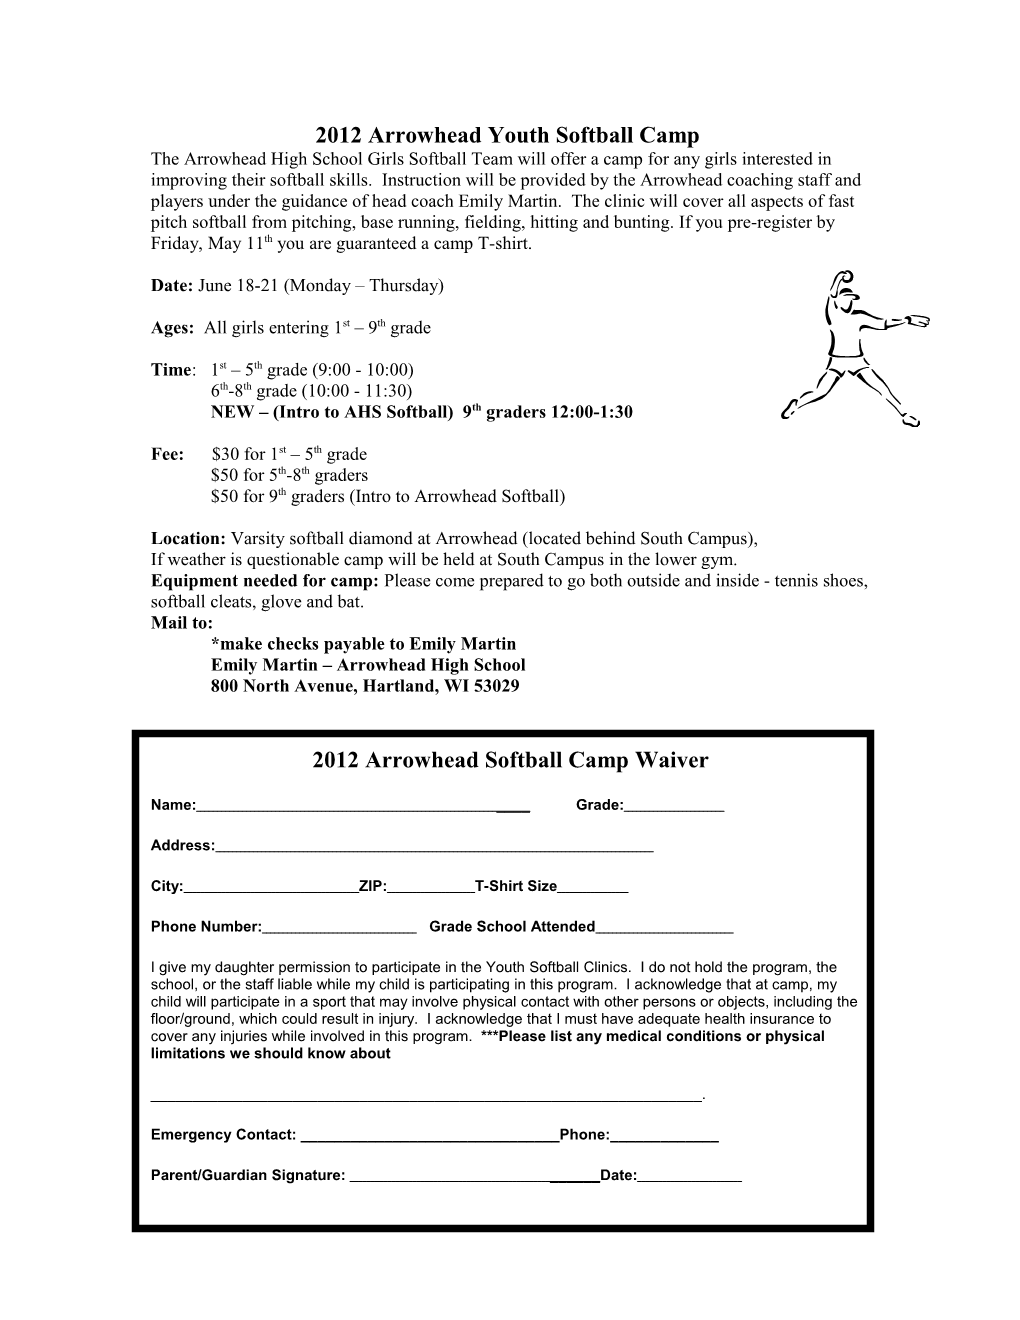 Arrowhead Youth Softball Camp (